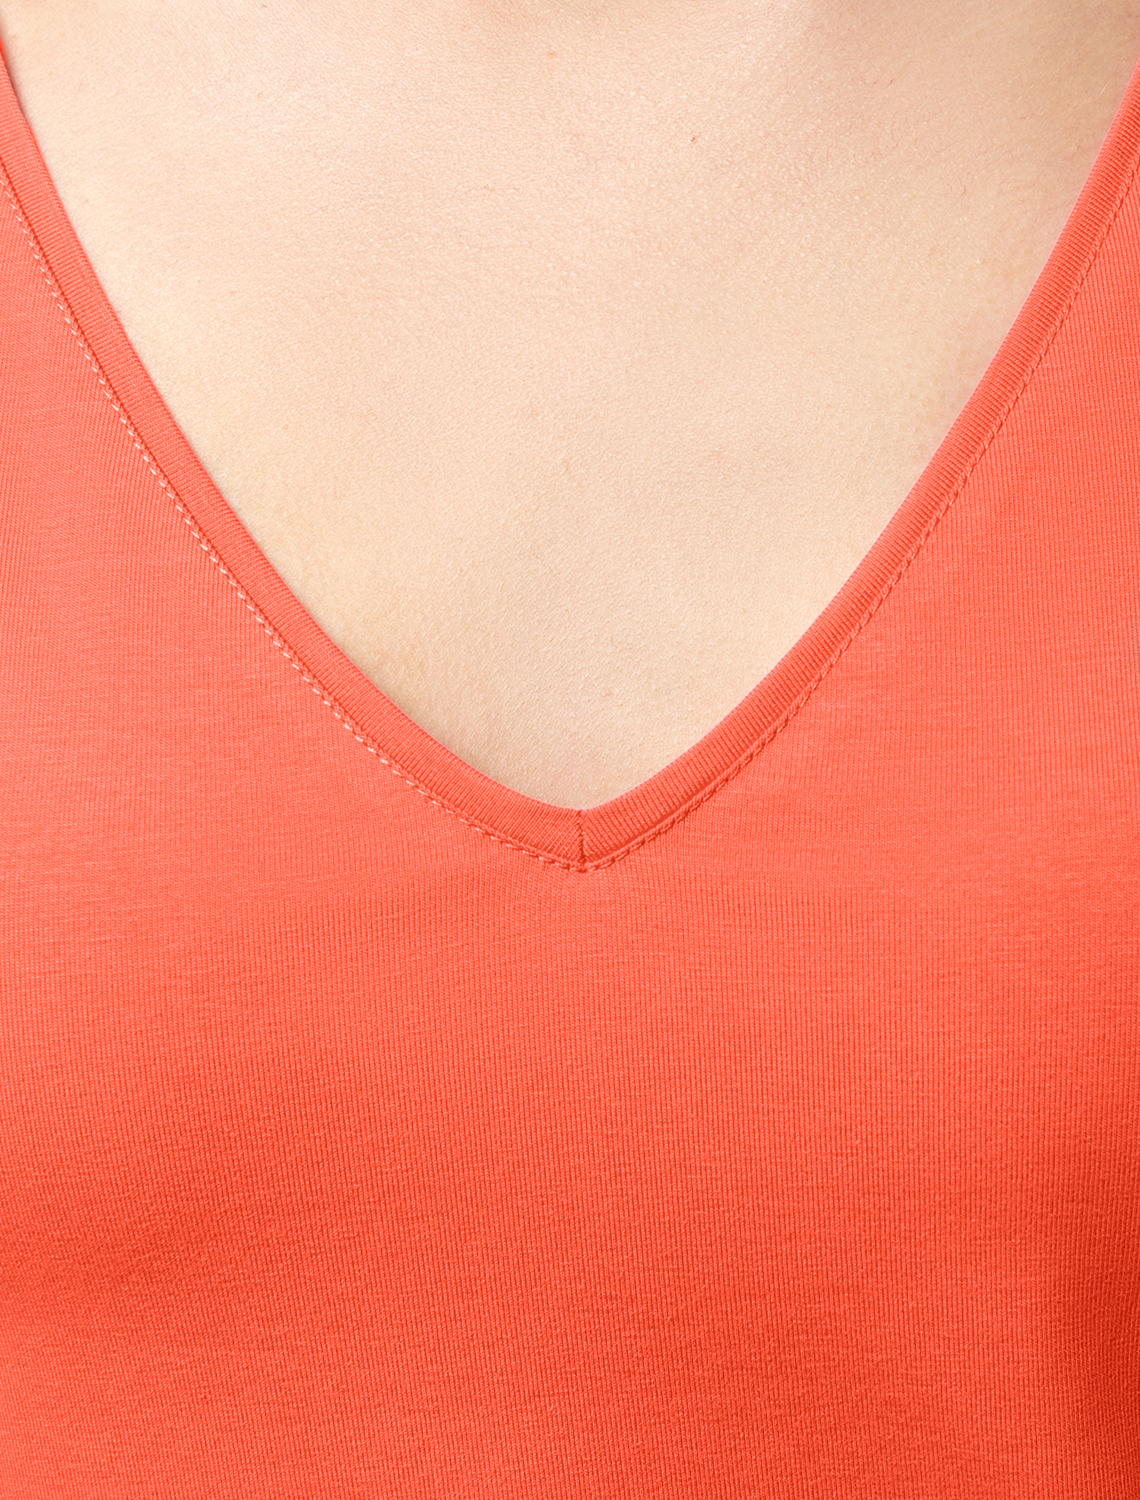 картинка Топ женский оранжево-коралловый от магазина Одежда+